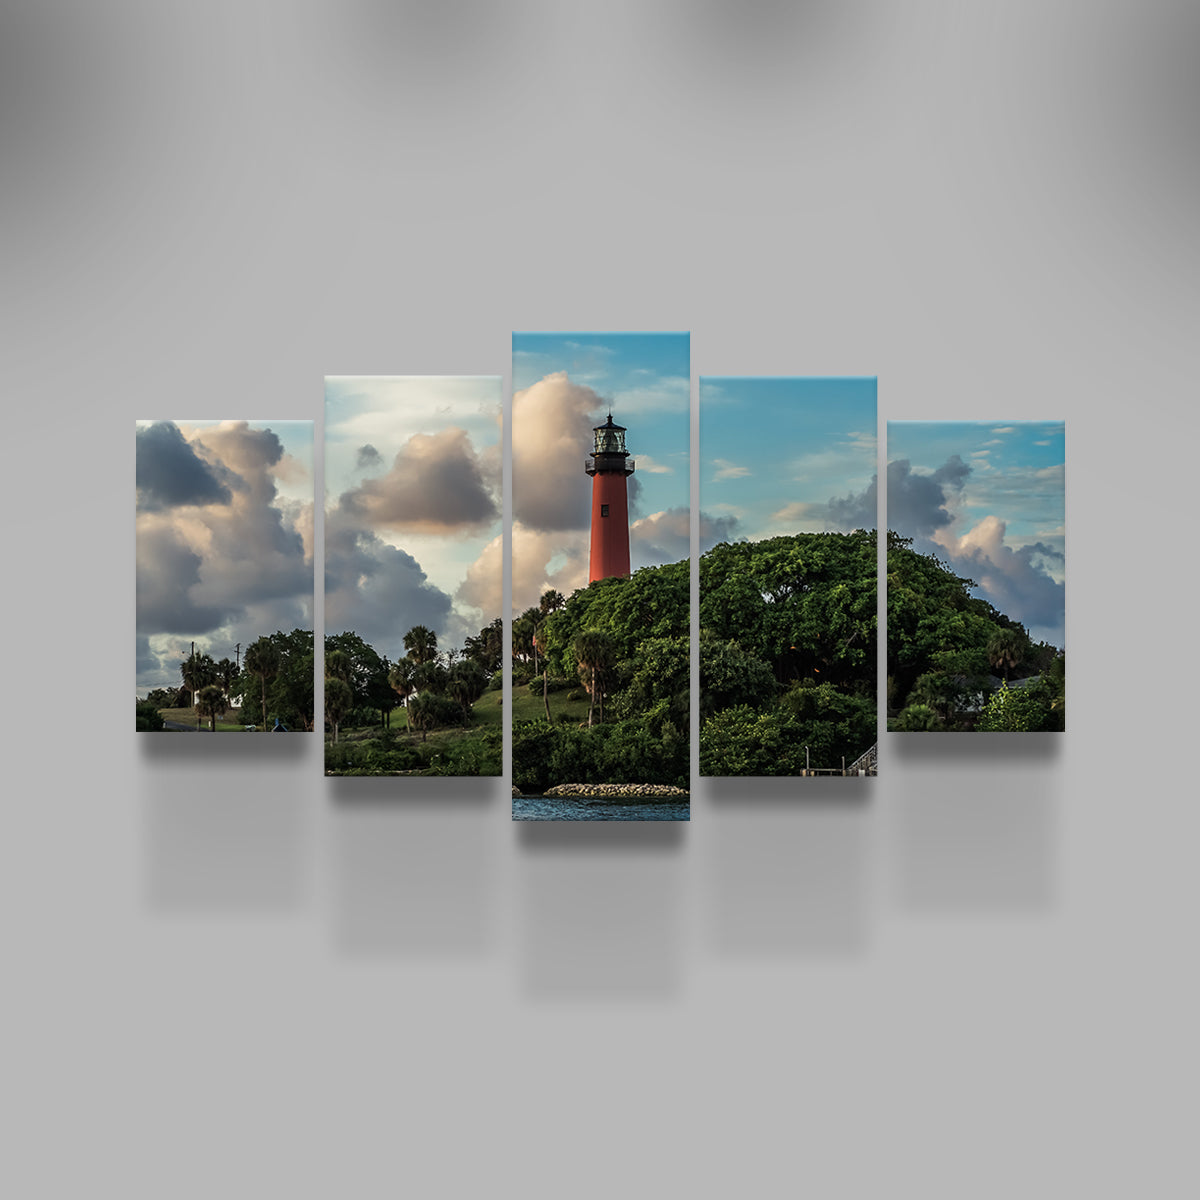 Lighthouse in Jupiter Florida